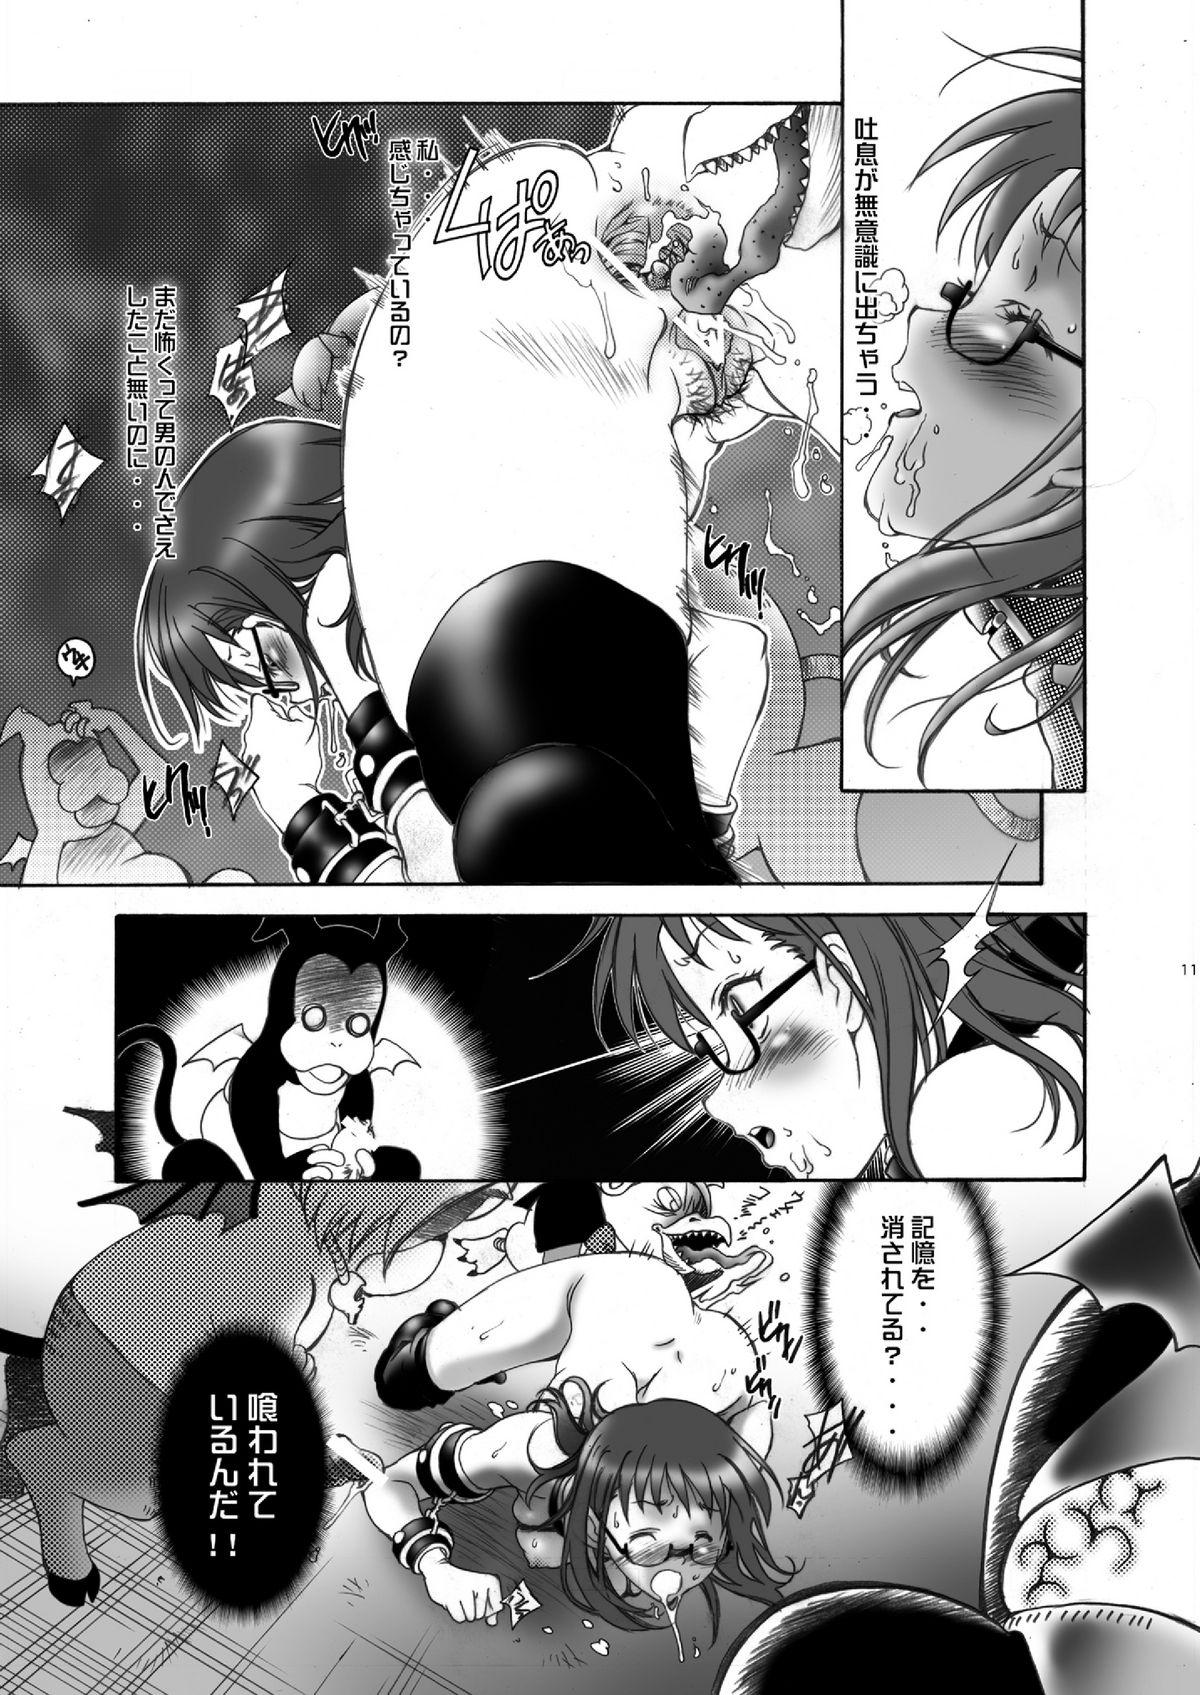 Female Orgasm Ittemasuyo! Saku-chan. - Yondemasuyo azazel san Gordibuena - Page 11